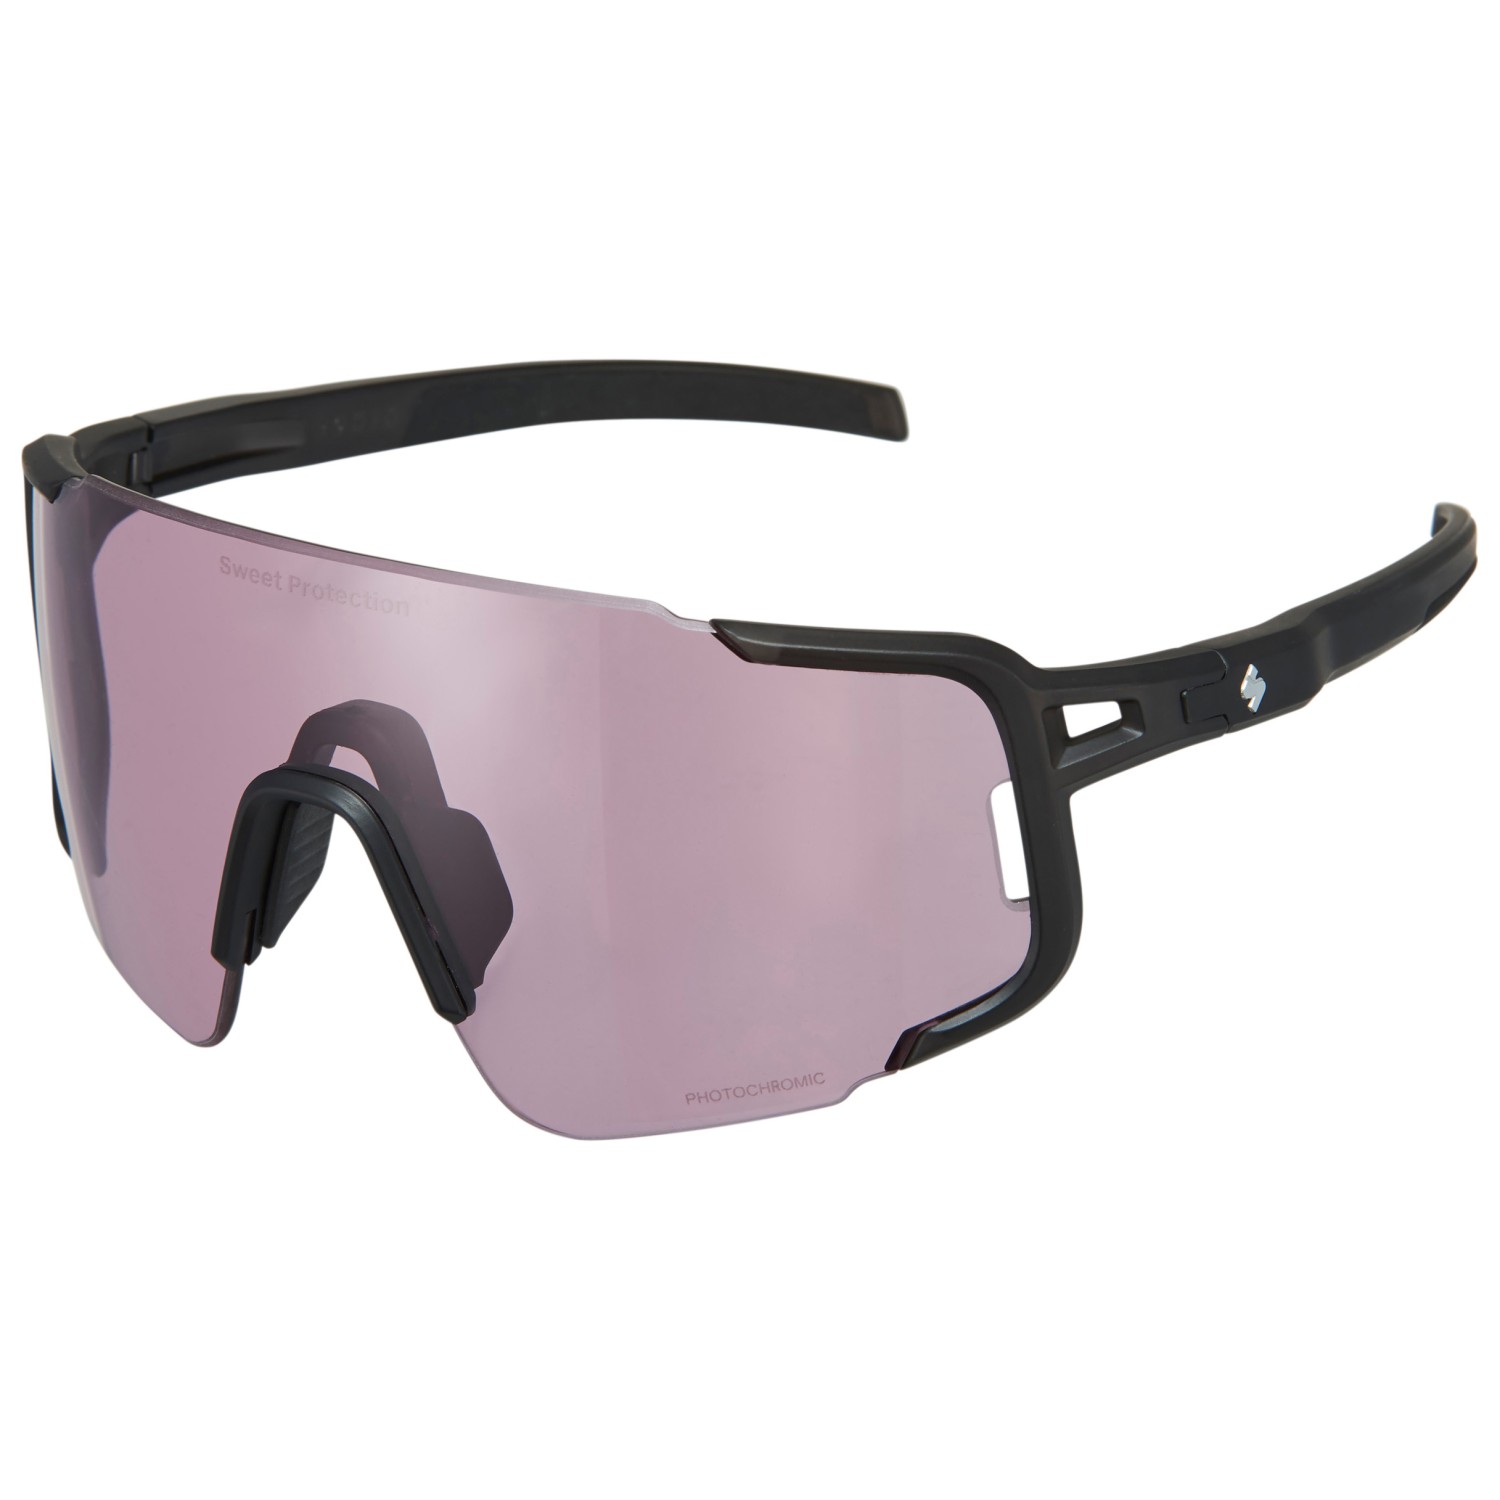 Велосипедные очки Sweet Protection Ronin Max RIG Photochromic S1 3 (VLT 75 14%), матовый кристально черный